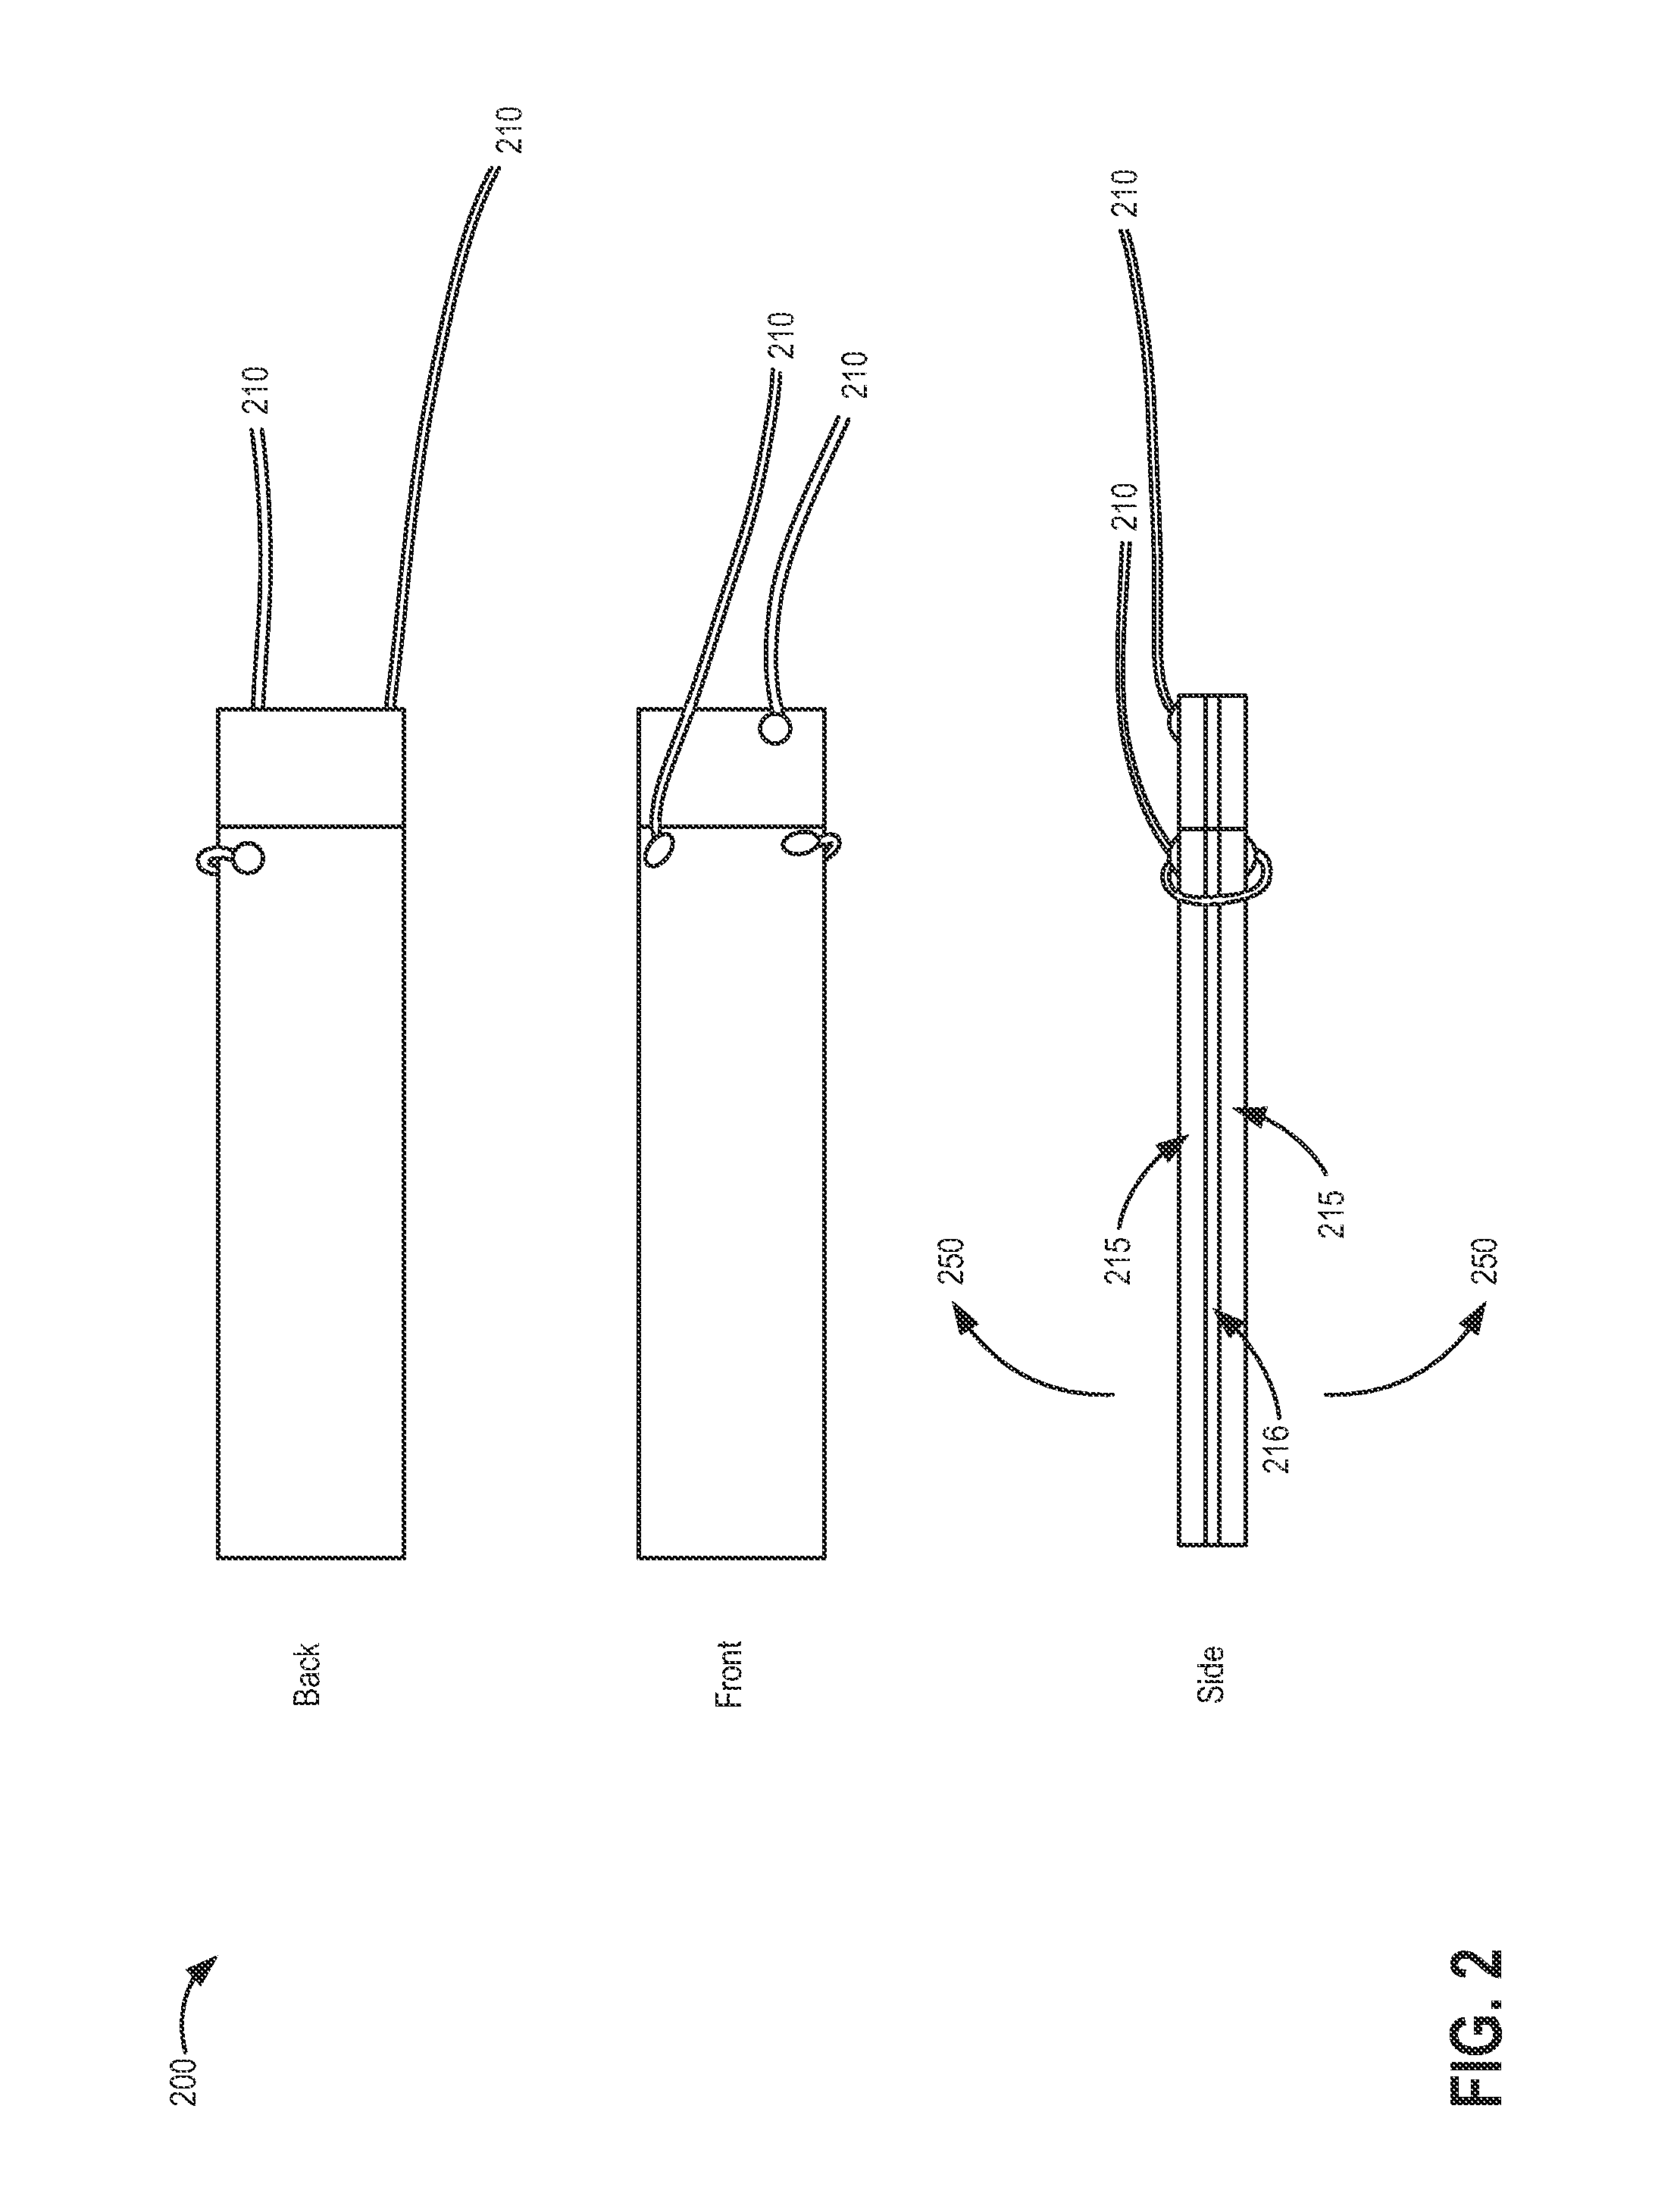 Loudspeaker with piezoelectric elements